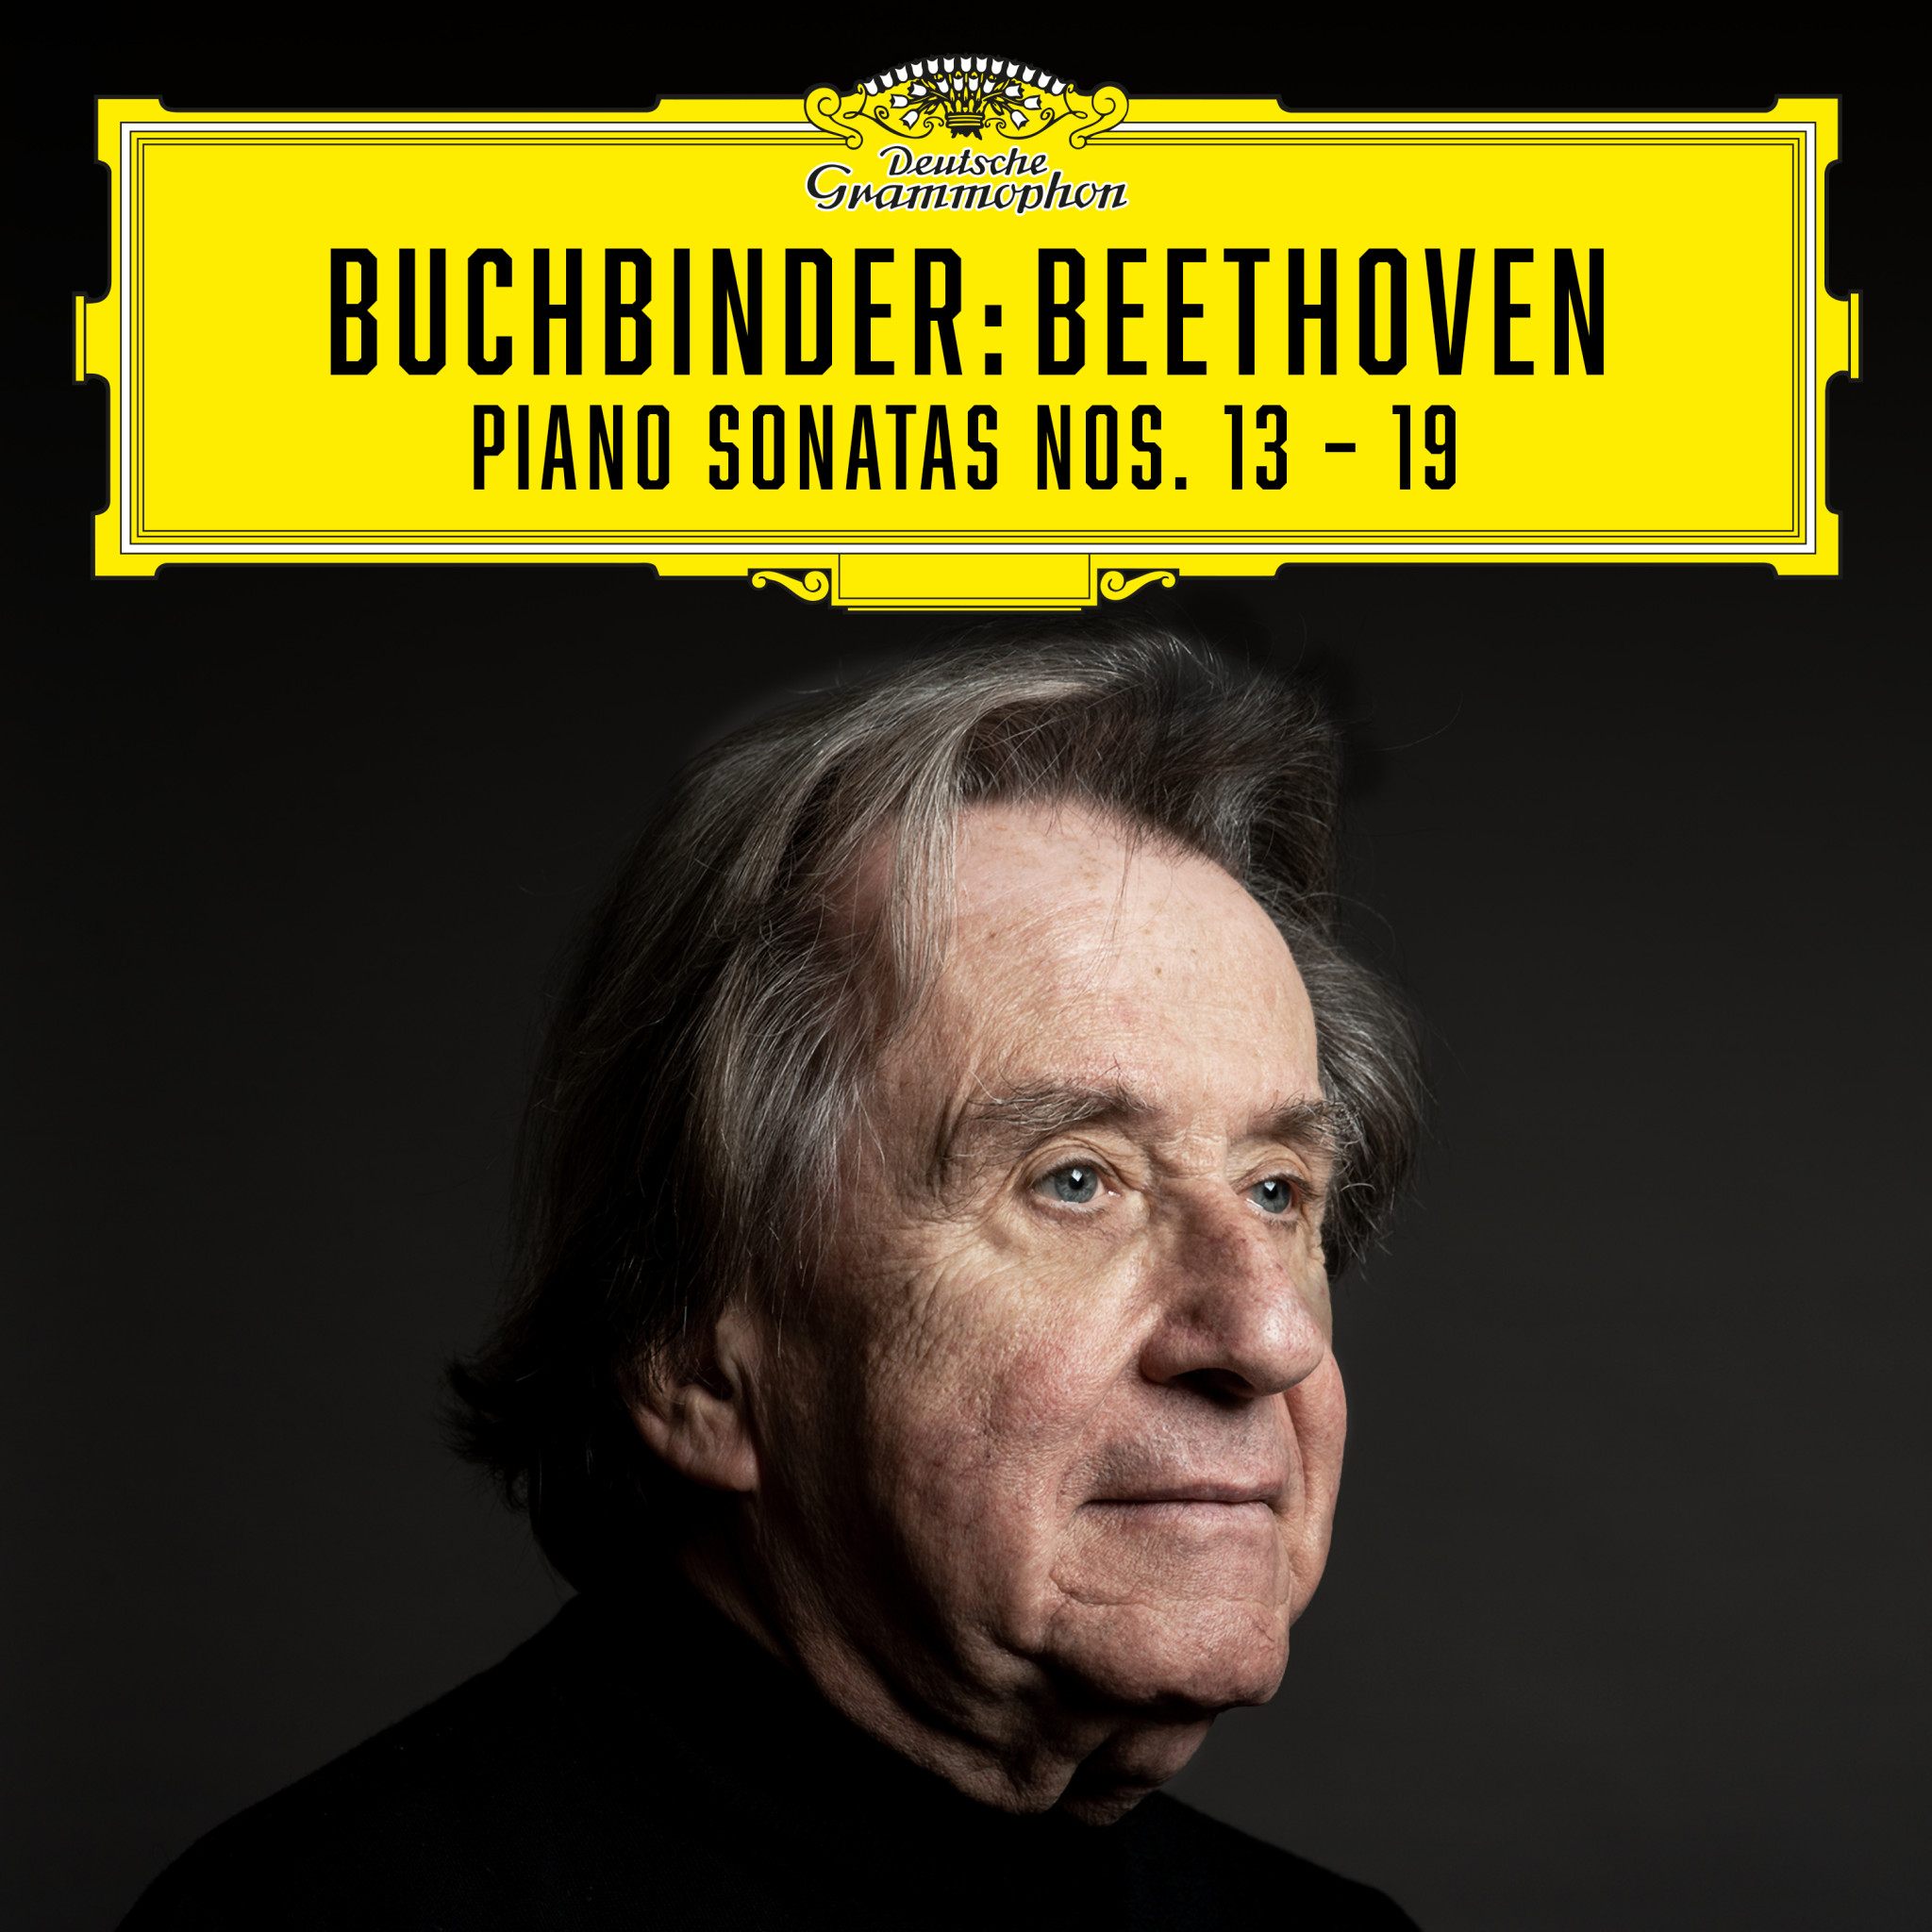 Buchbinder - Beethoven: Piano Sonatas Nos. 13 - 19 eAlbum Cover